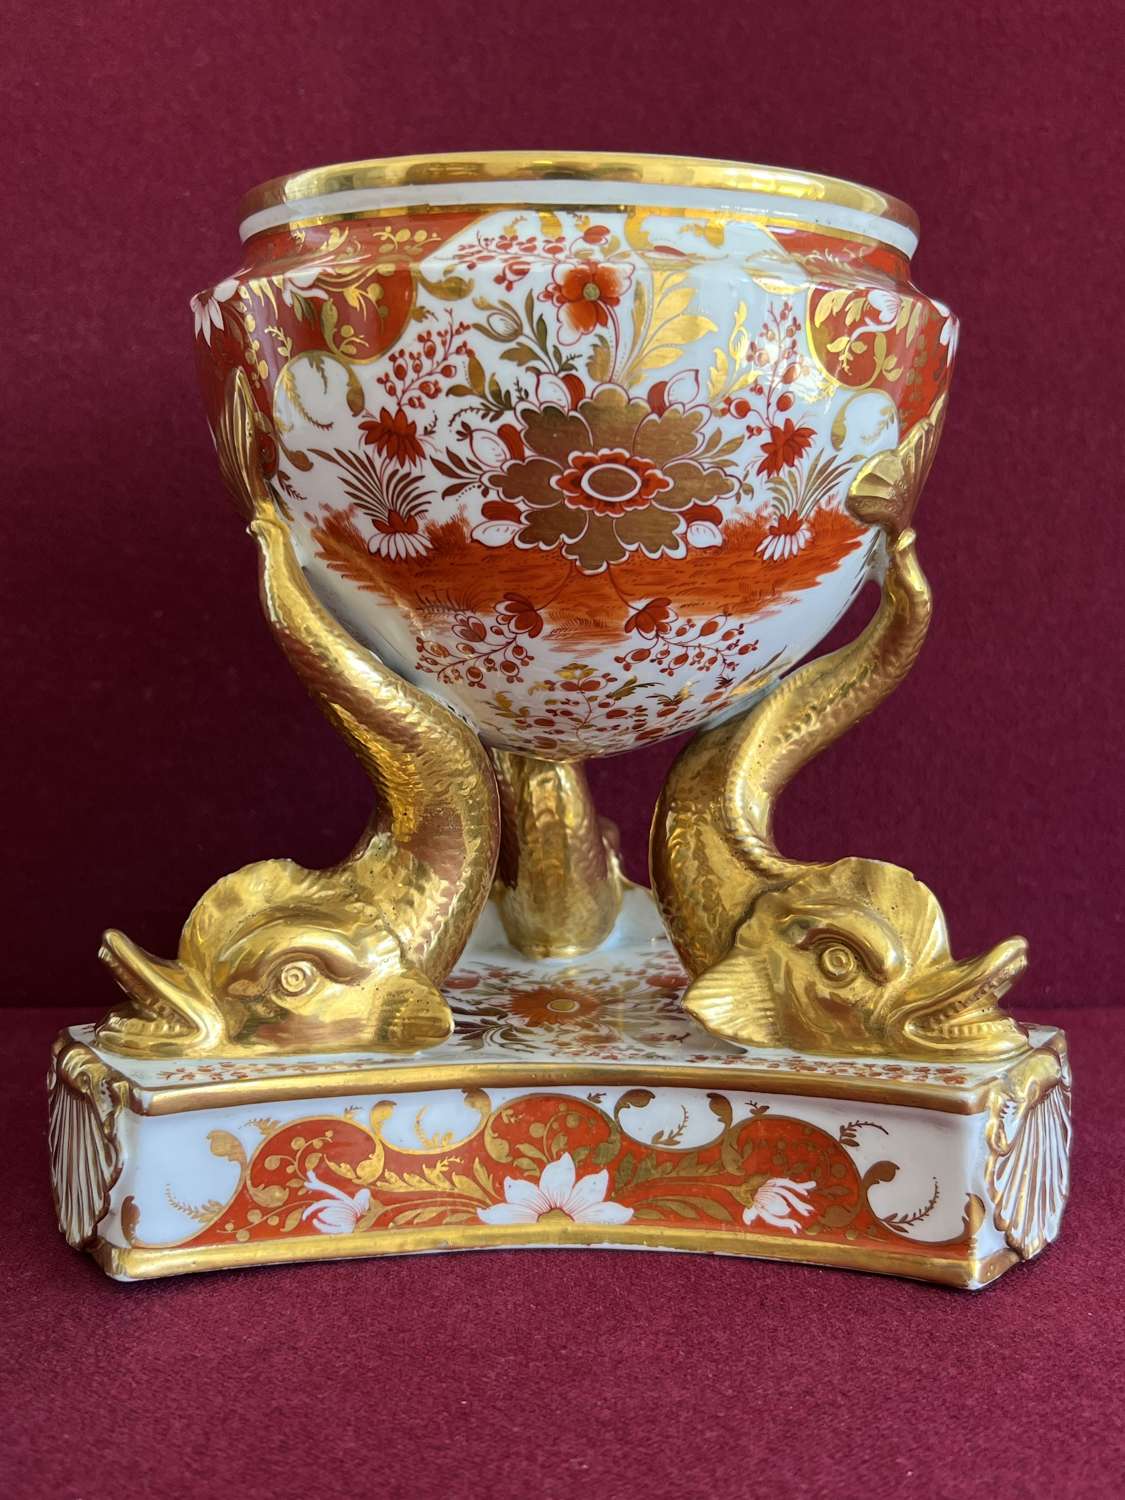 A Chamberlain Worcester Porcelain Cream Tureen c.1805-1810